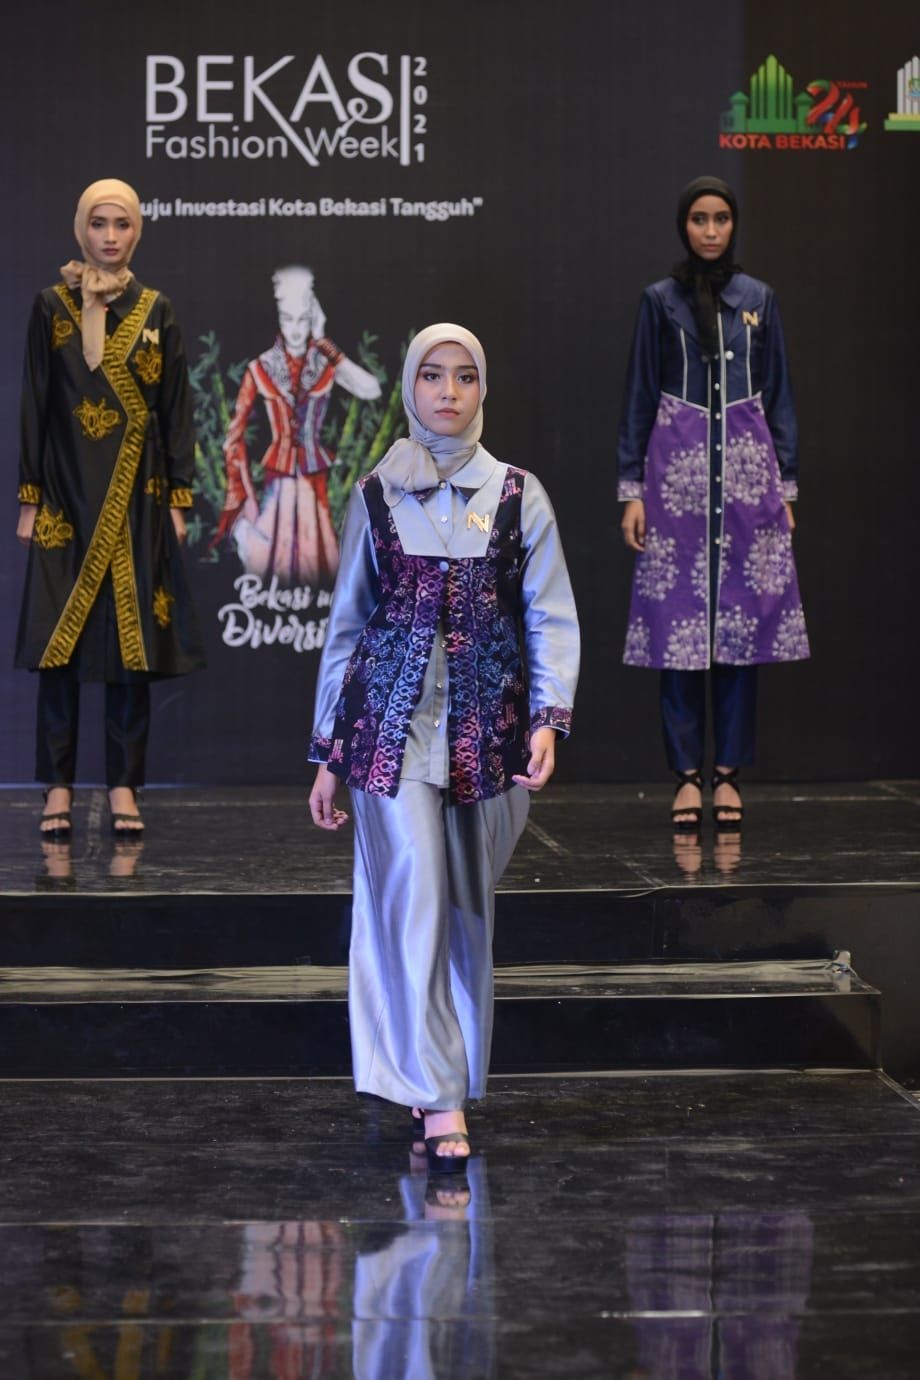 Nina Nugroho Usung Batik Bekasi di Gelaran Bekasi Fashion Week 2021 (Nina Nugroho)